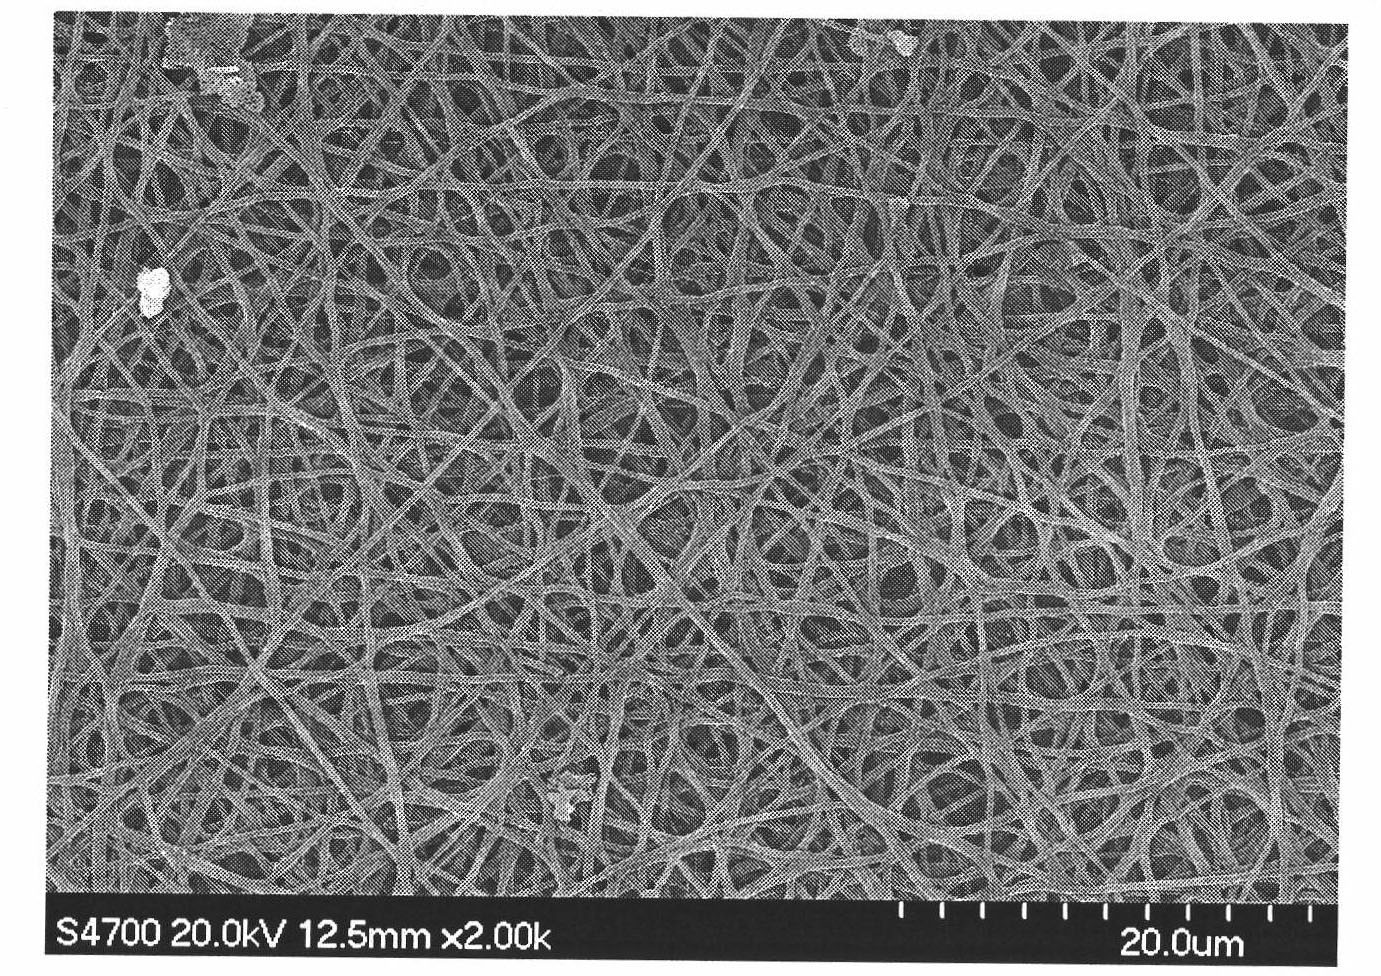 Preparation method of medicament-loaded biodegradable nano-fiber medical dressing